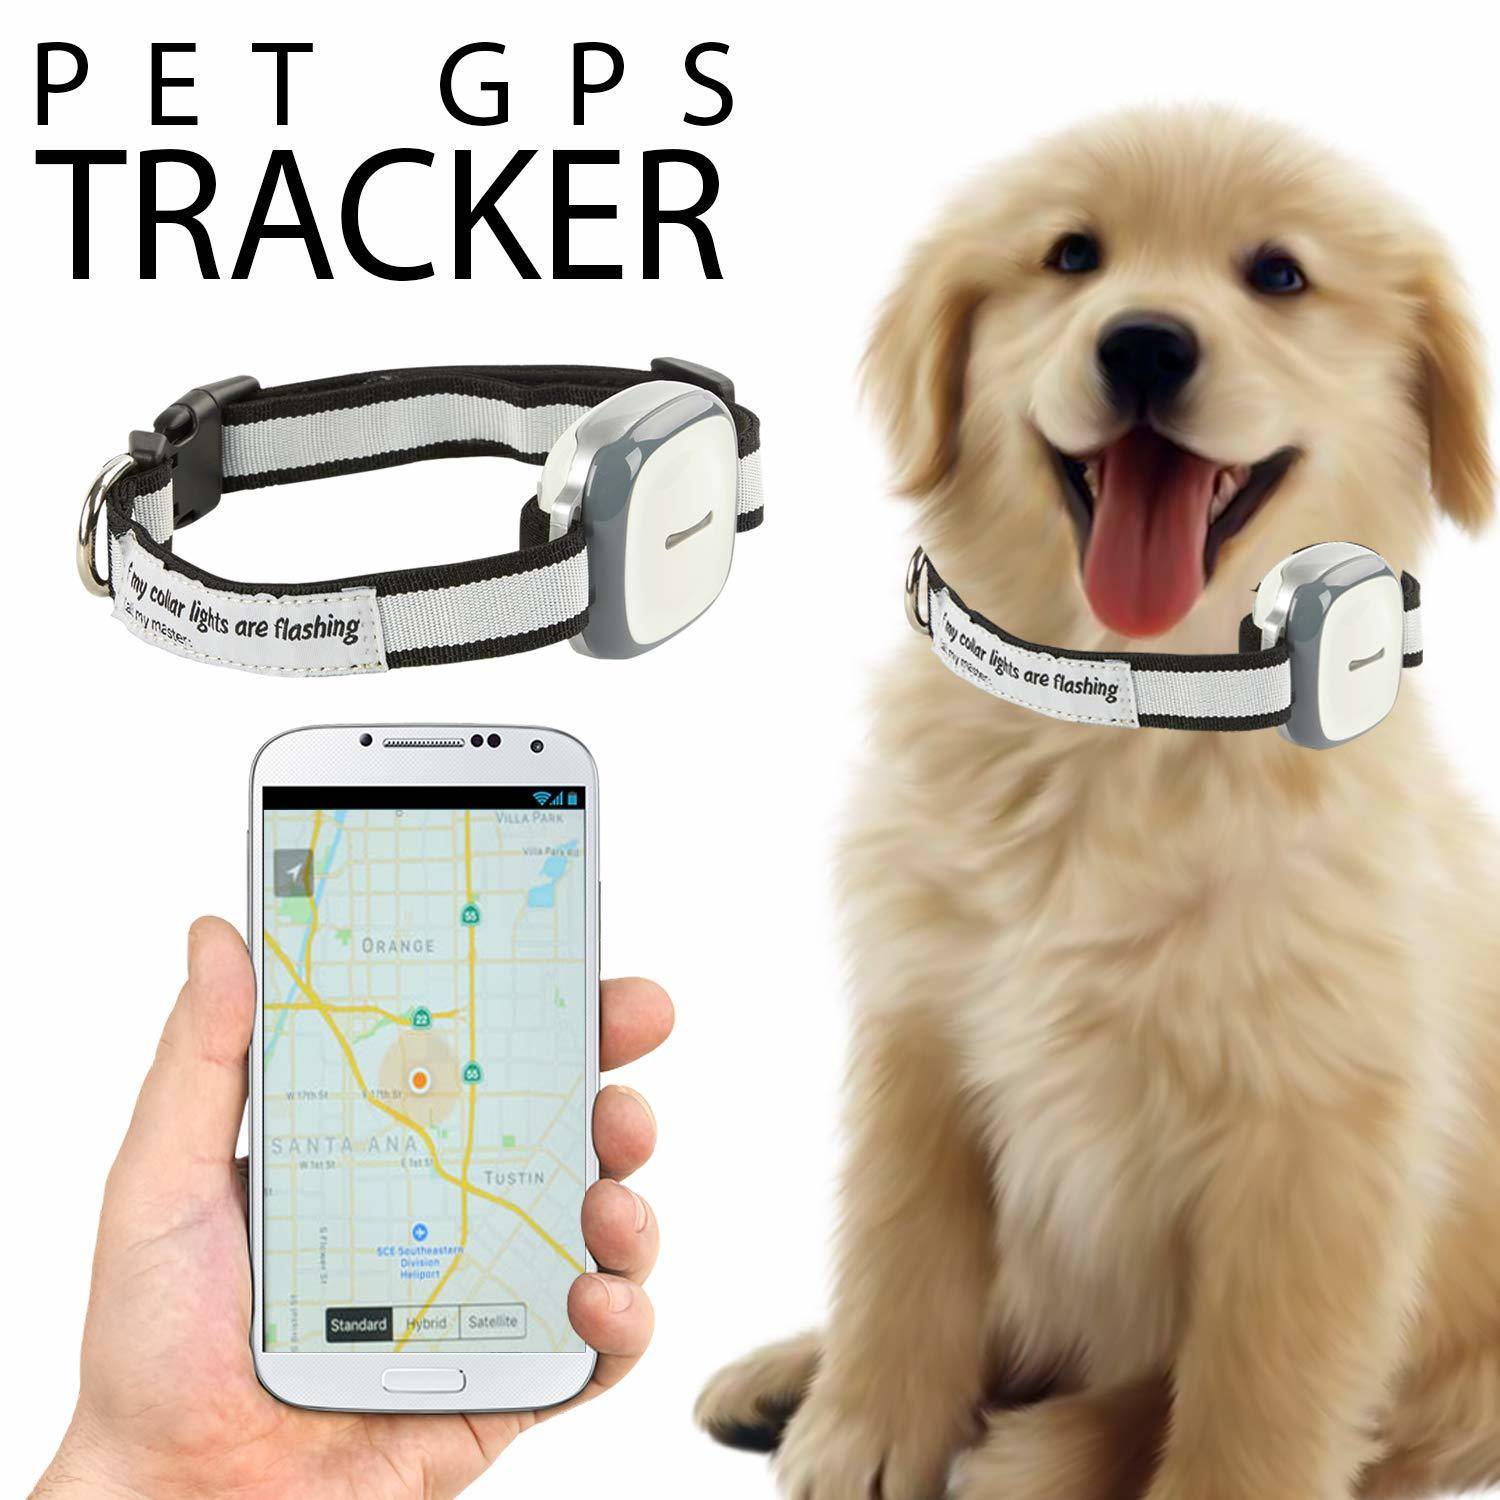 Gps трекер для собак (кошек), обзор технологии и устройств